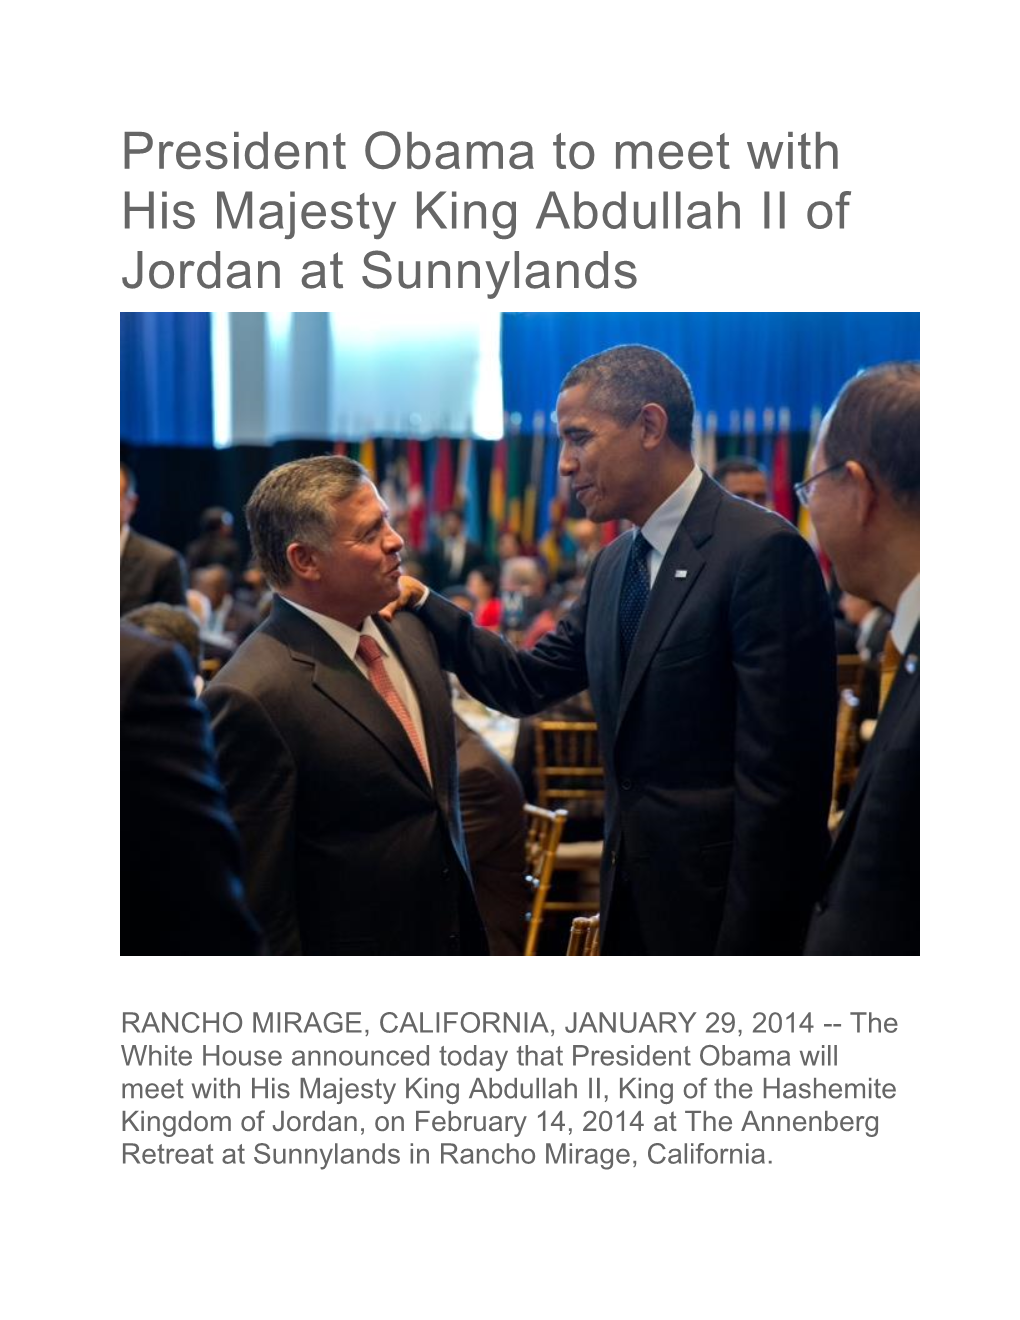 President Obama to Meet with His Majesty King Abdullah II of Jordan at Sunnylands